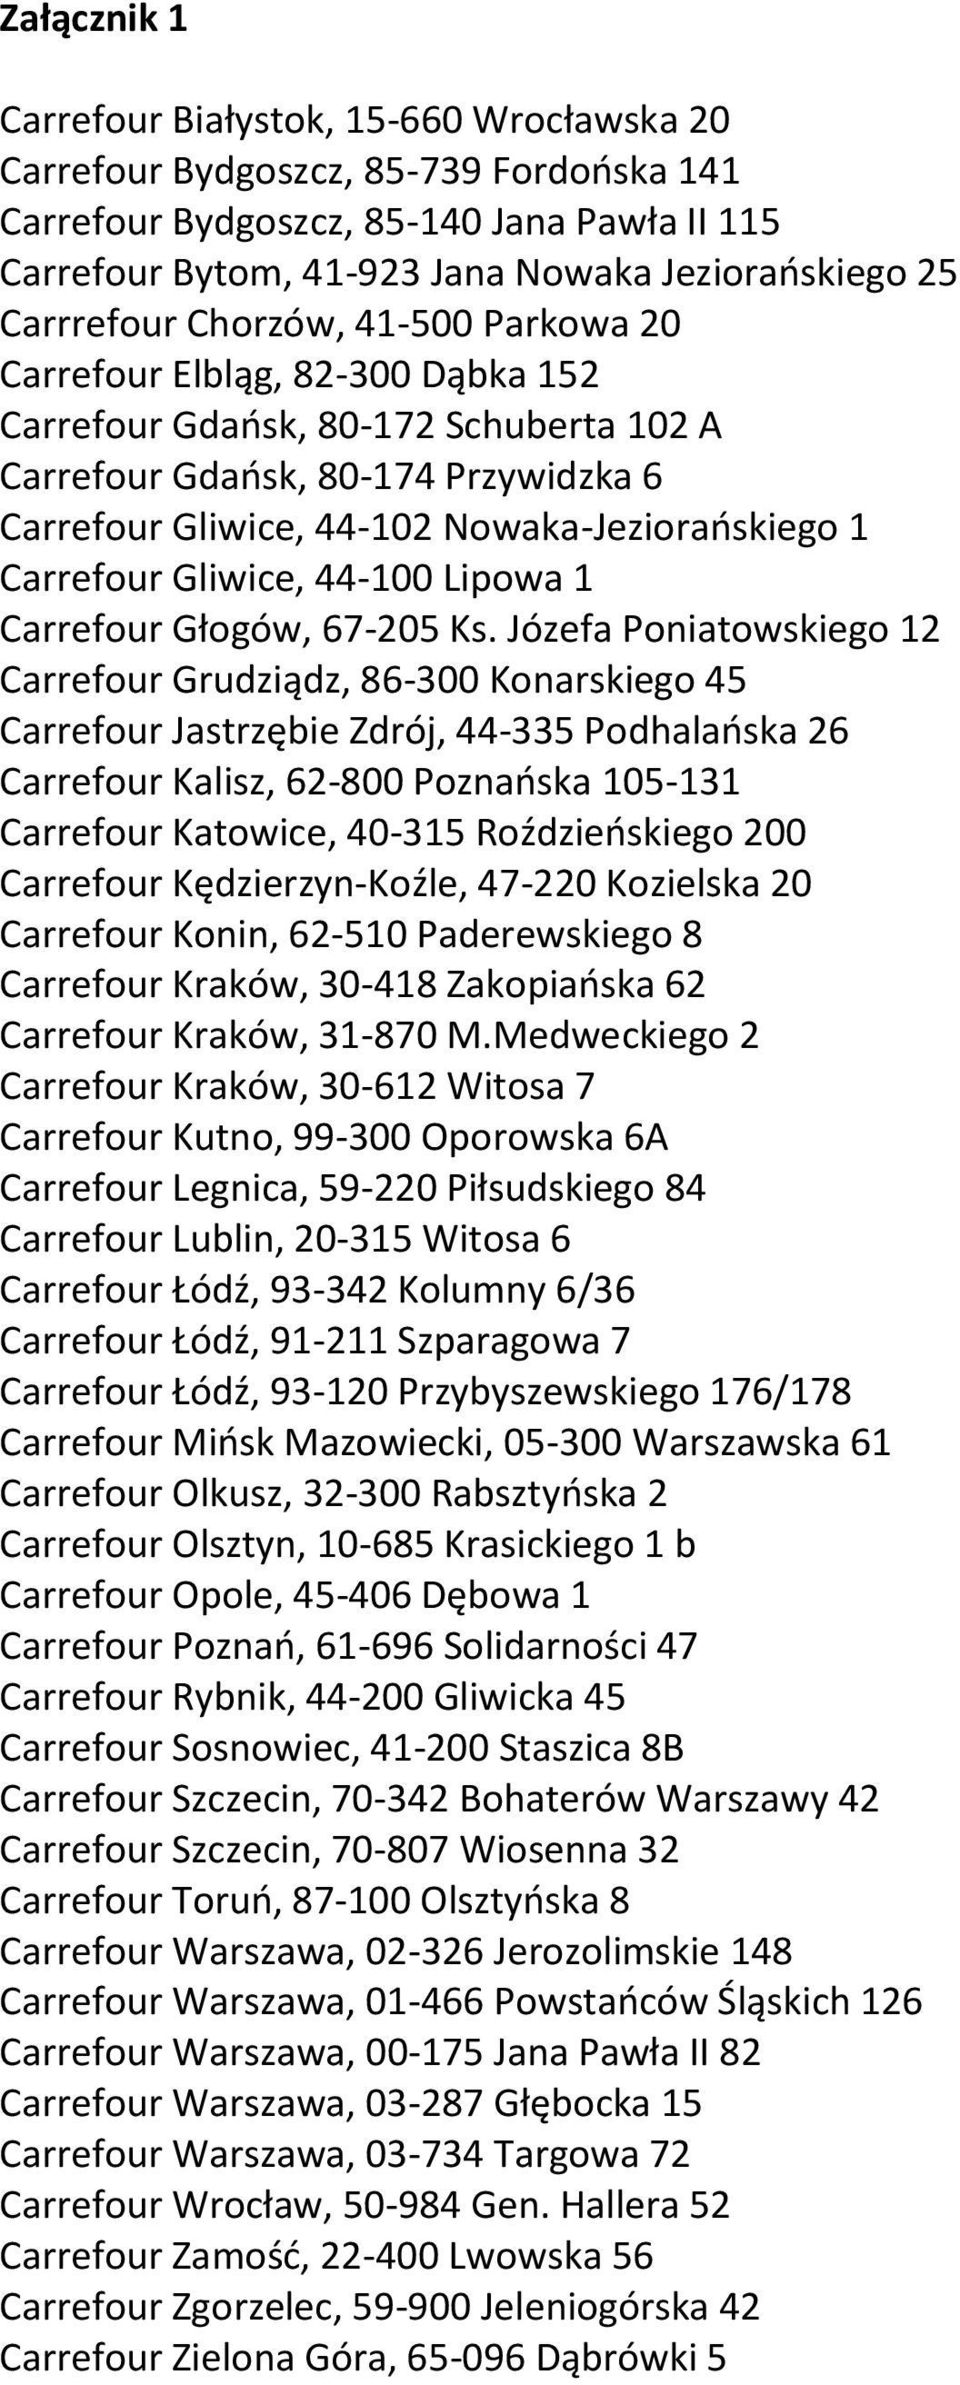 1 Carrefour Gliwice, 44-100 Lipowa 1 Carrefour Głogów, 67-205 Ks.